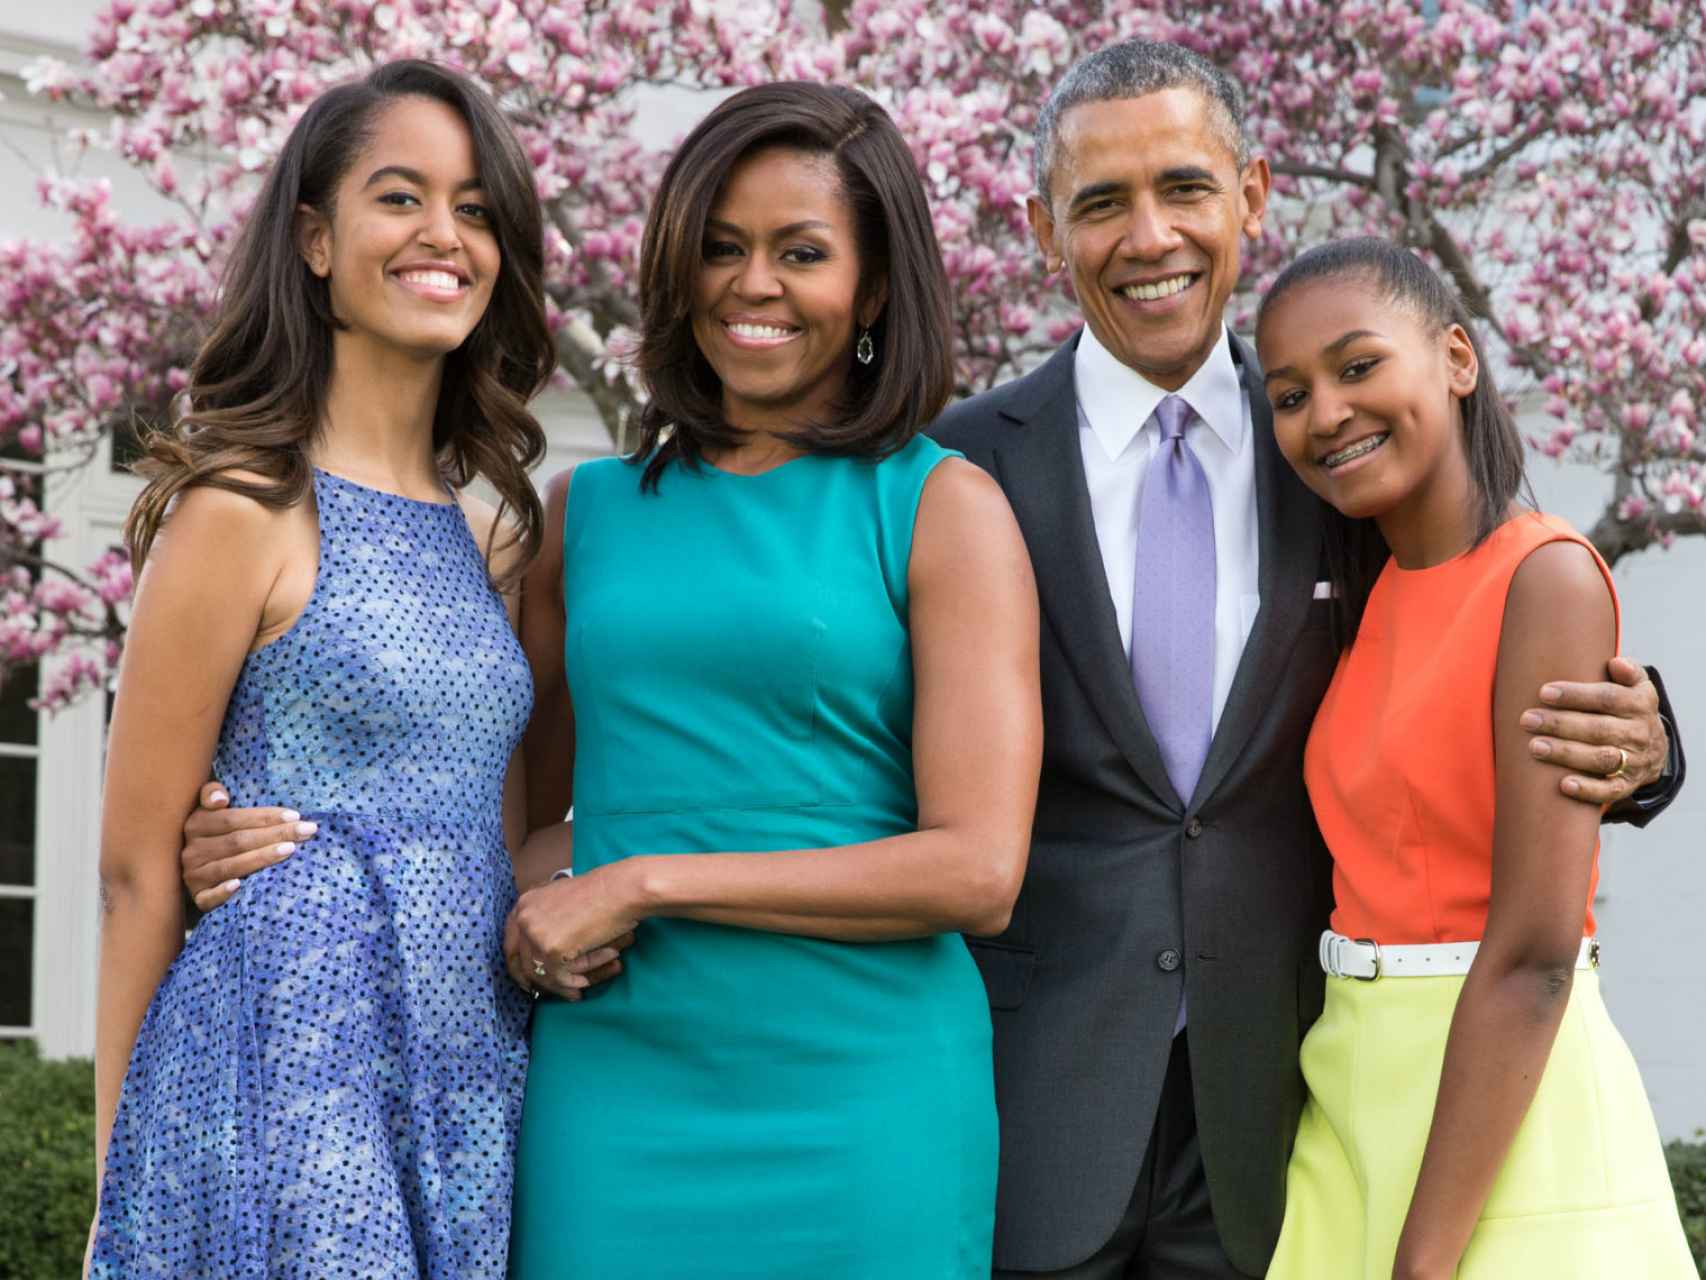 La familia Obama al completo